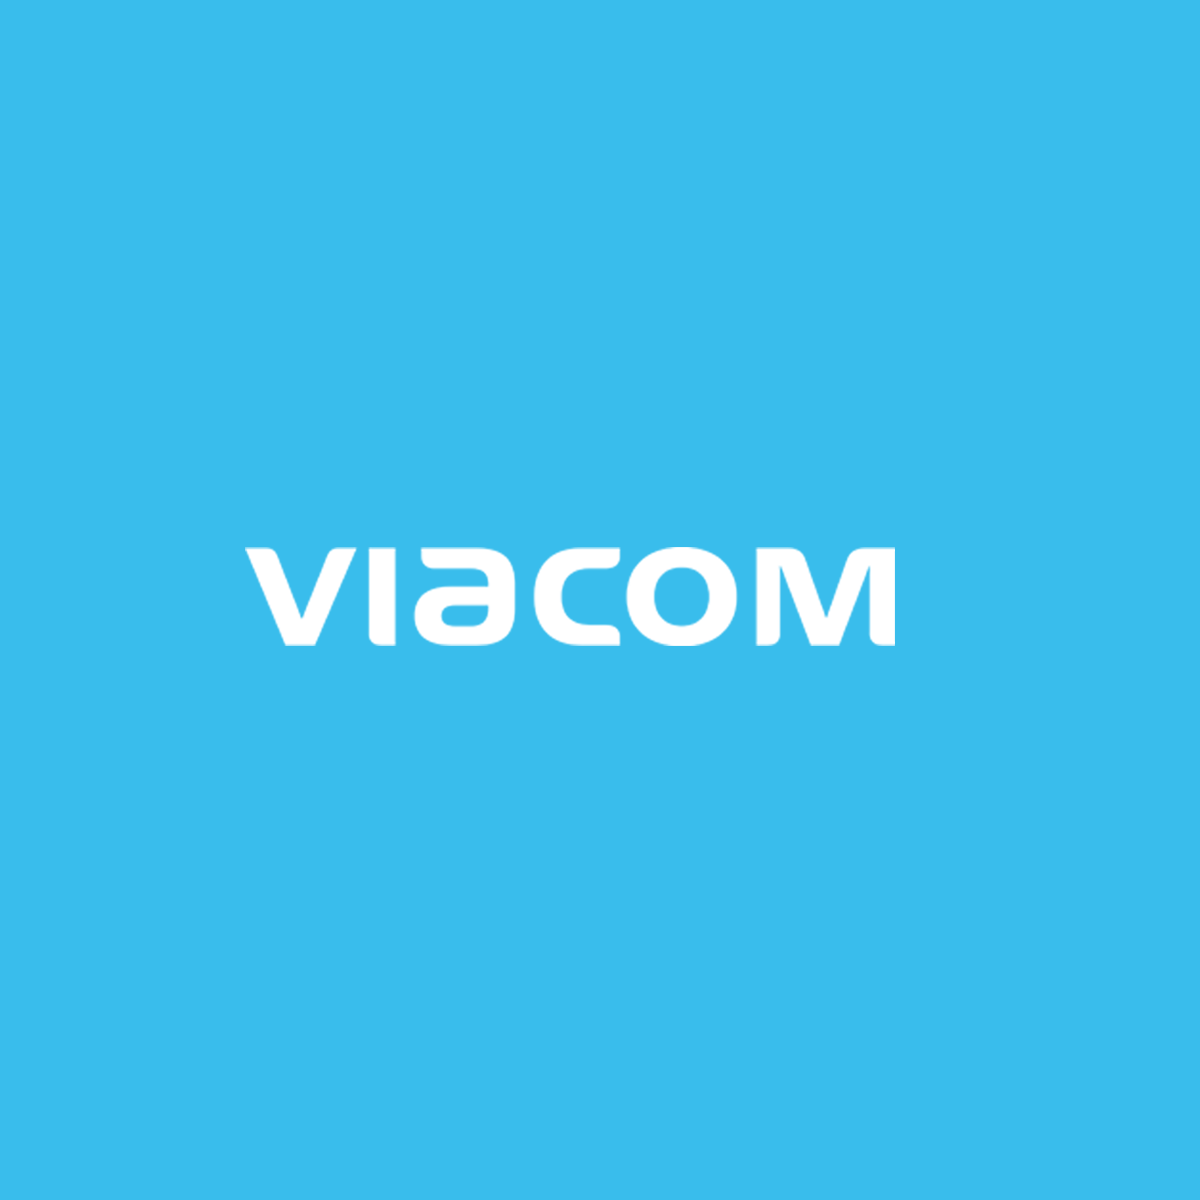 Viacom-Cover.png